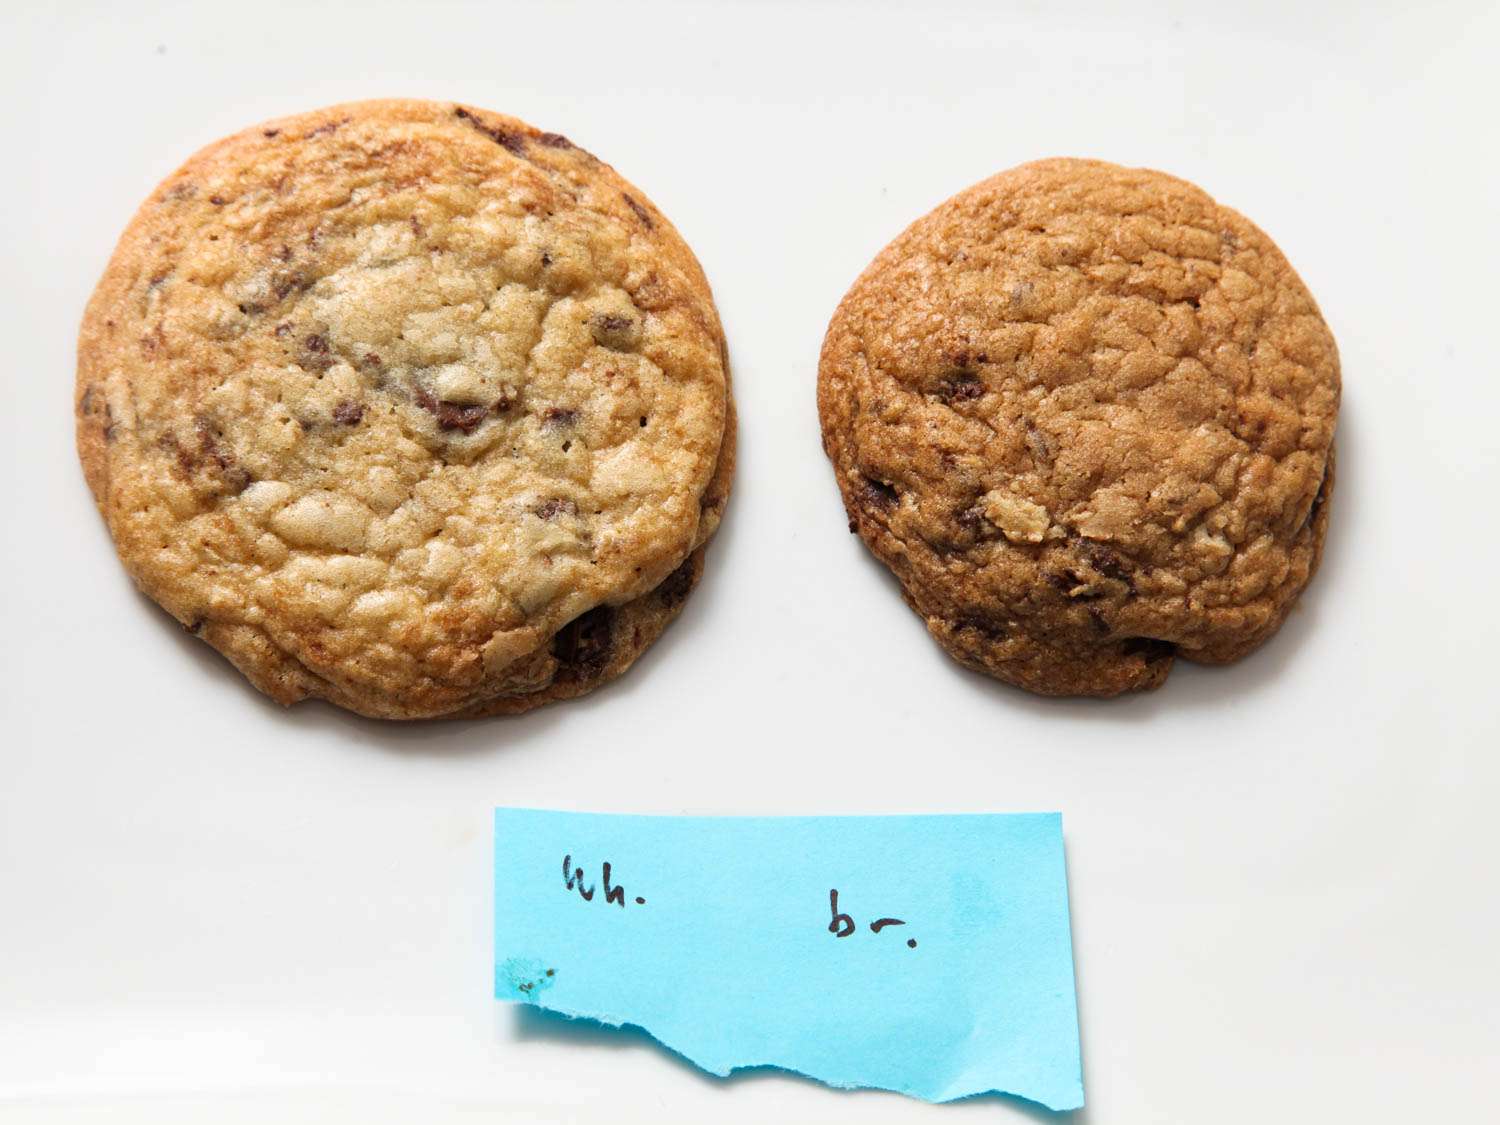 左图是用砂糖制作的巧克力饼干(左)，右图是用红糖制作的巧克力饼干(右)。gydF4y2Ba